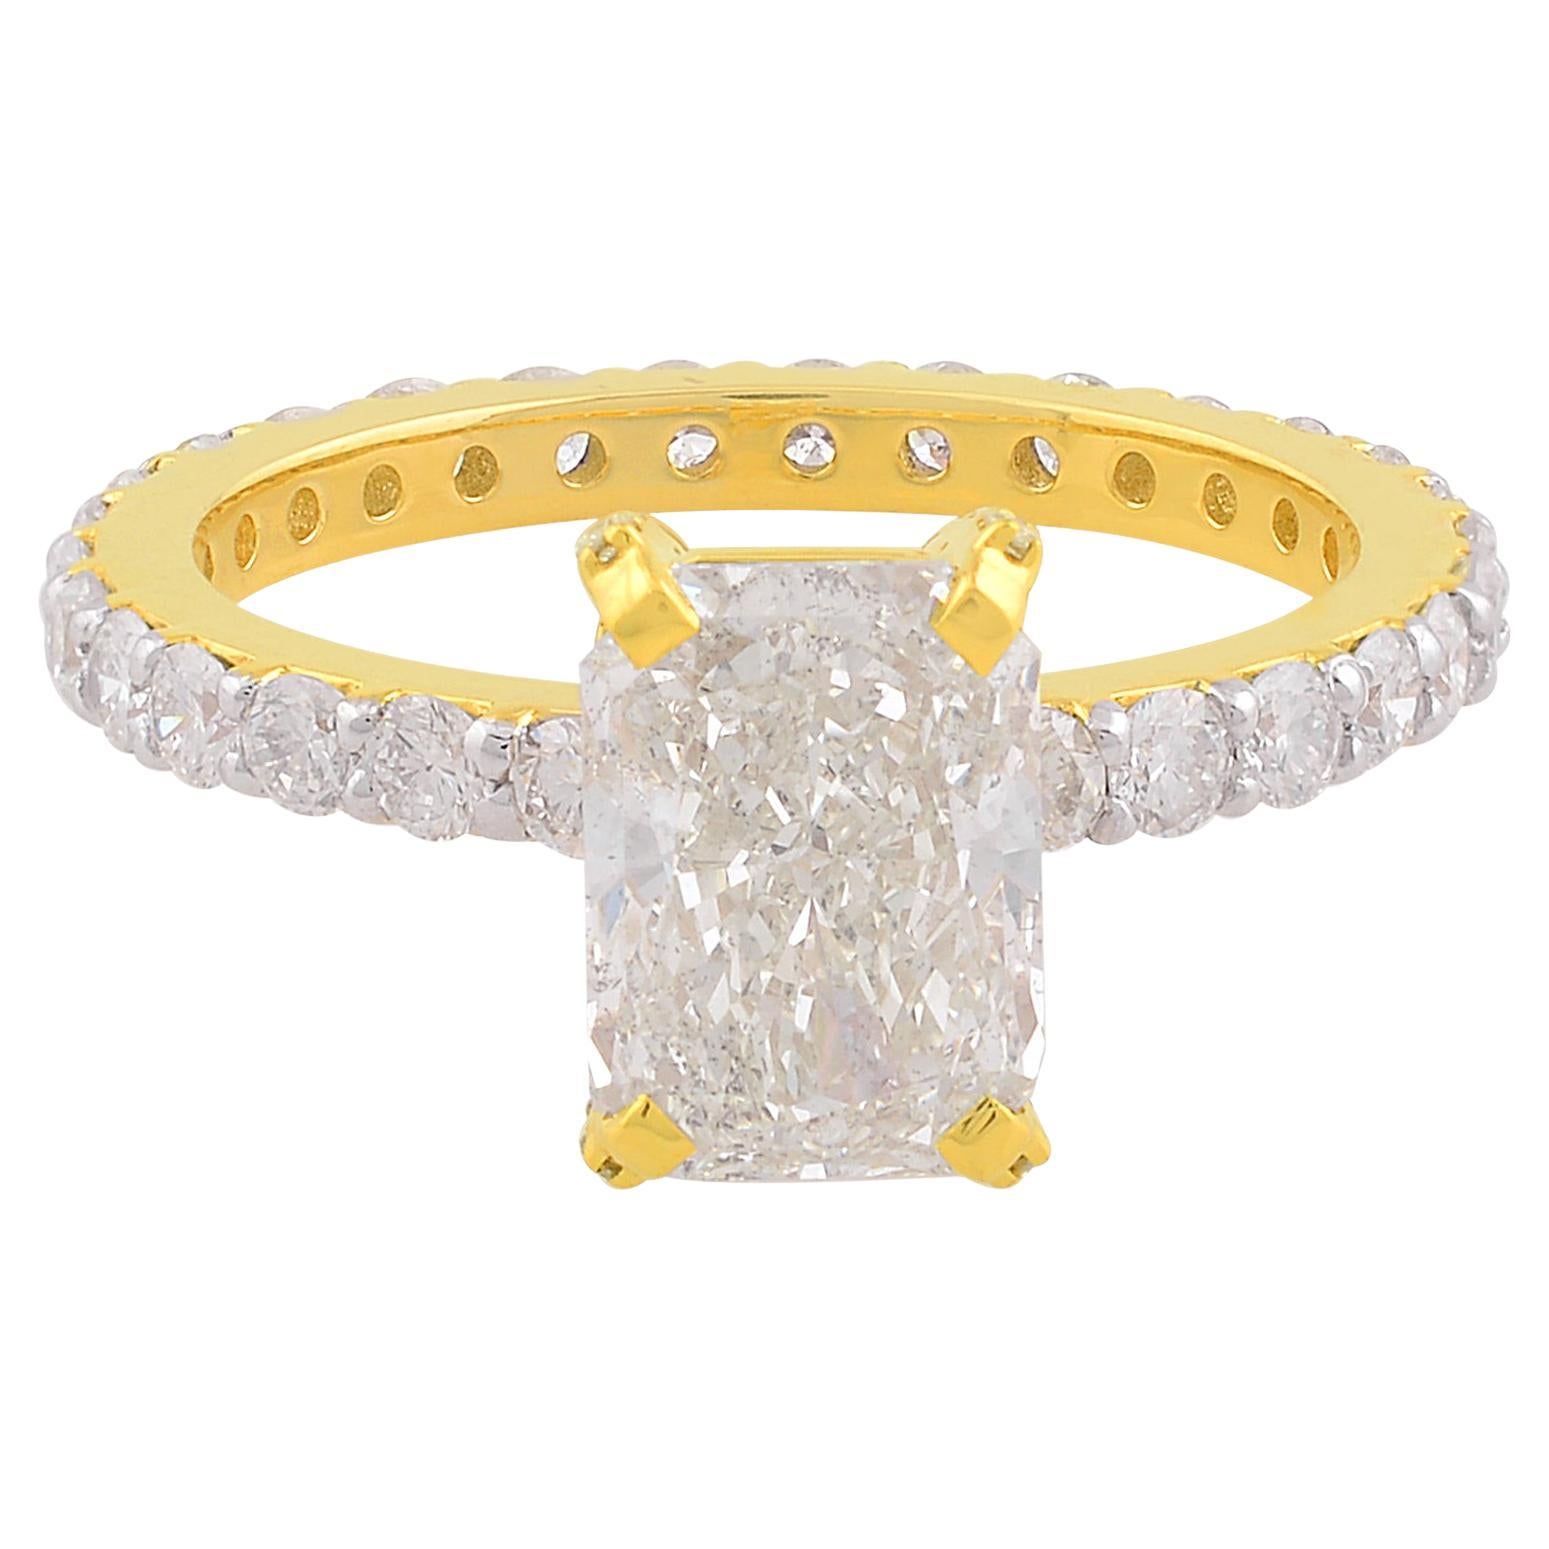 SI Reinheit HI Farbe Solitär Diamant-Ring 18 Karat Gelbgold Schmuck